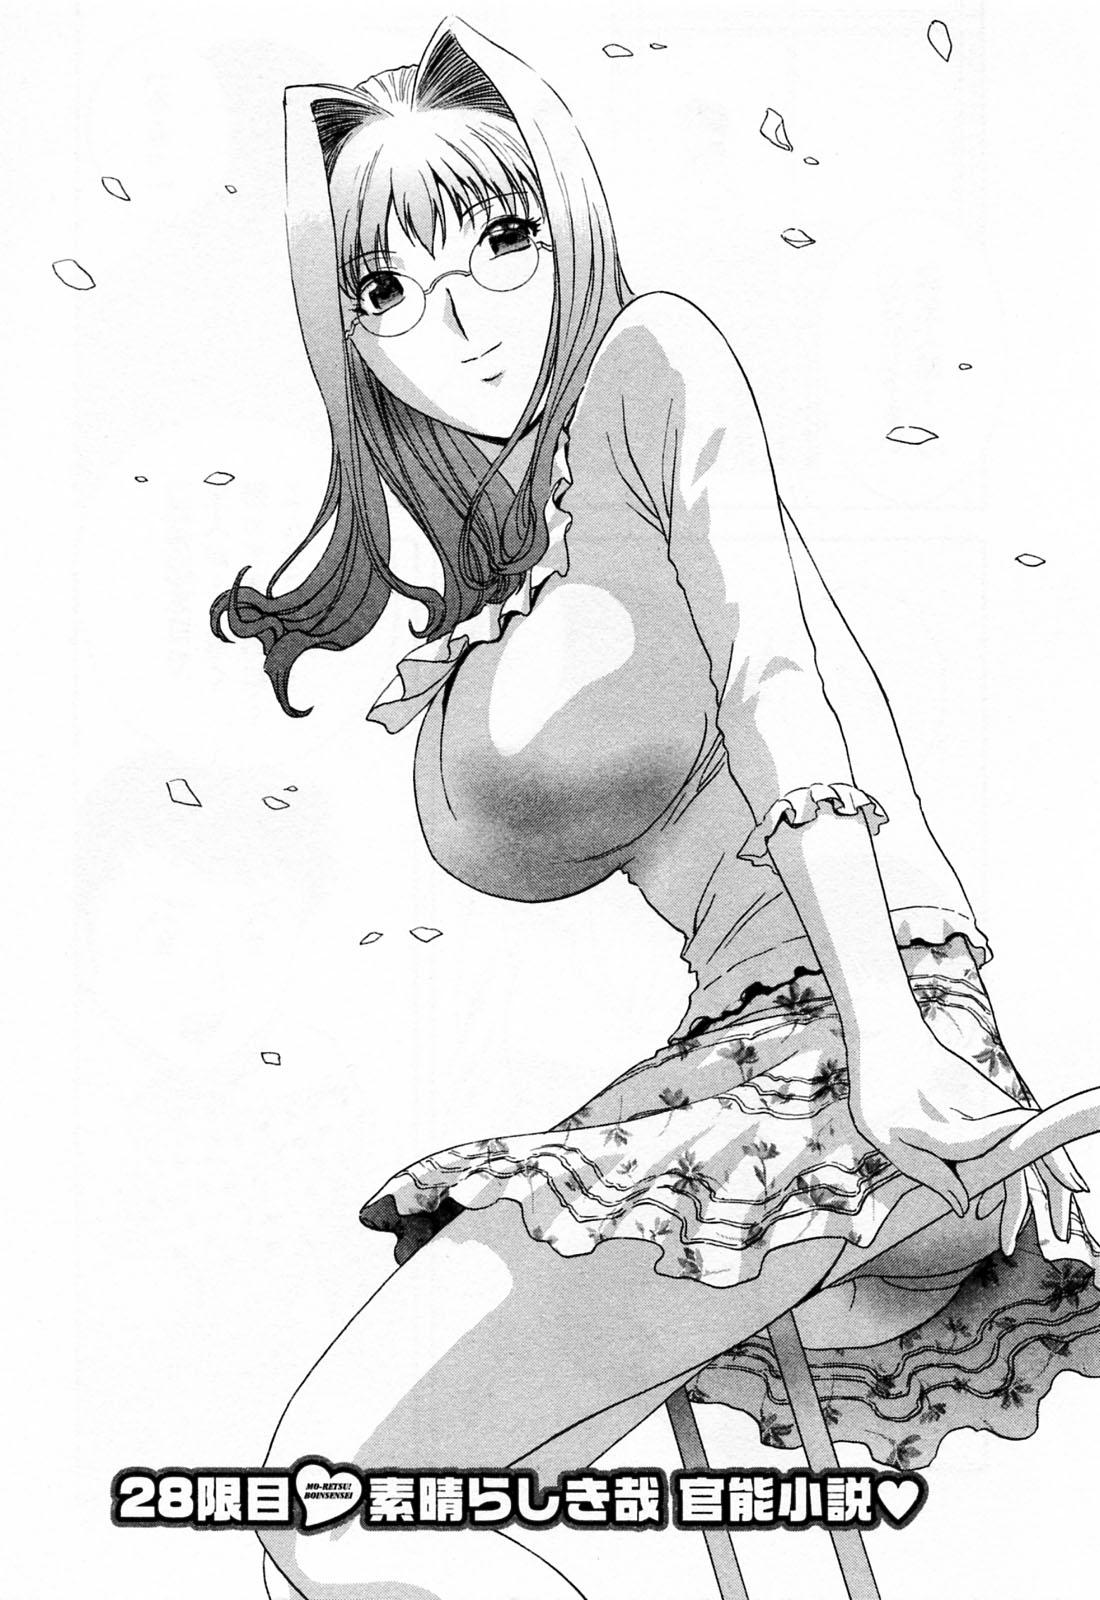 [Hidemaru] Mo-Retsu! Boin Sensei (Boing Boing Teacher) Vol.4 10